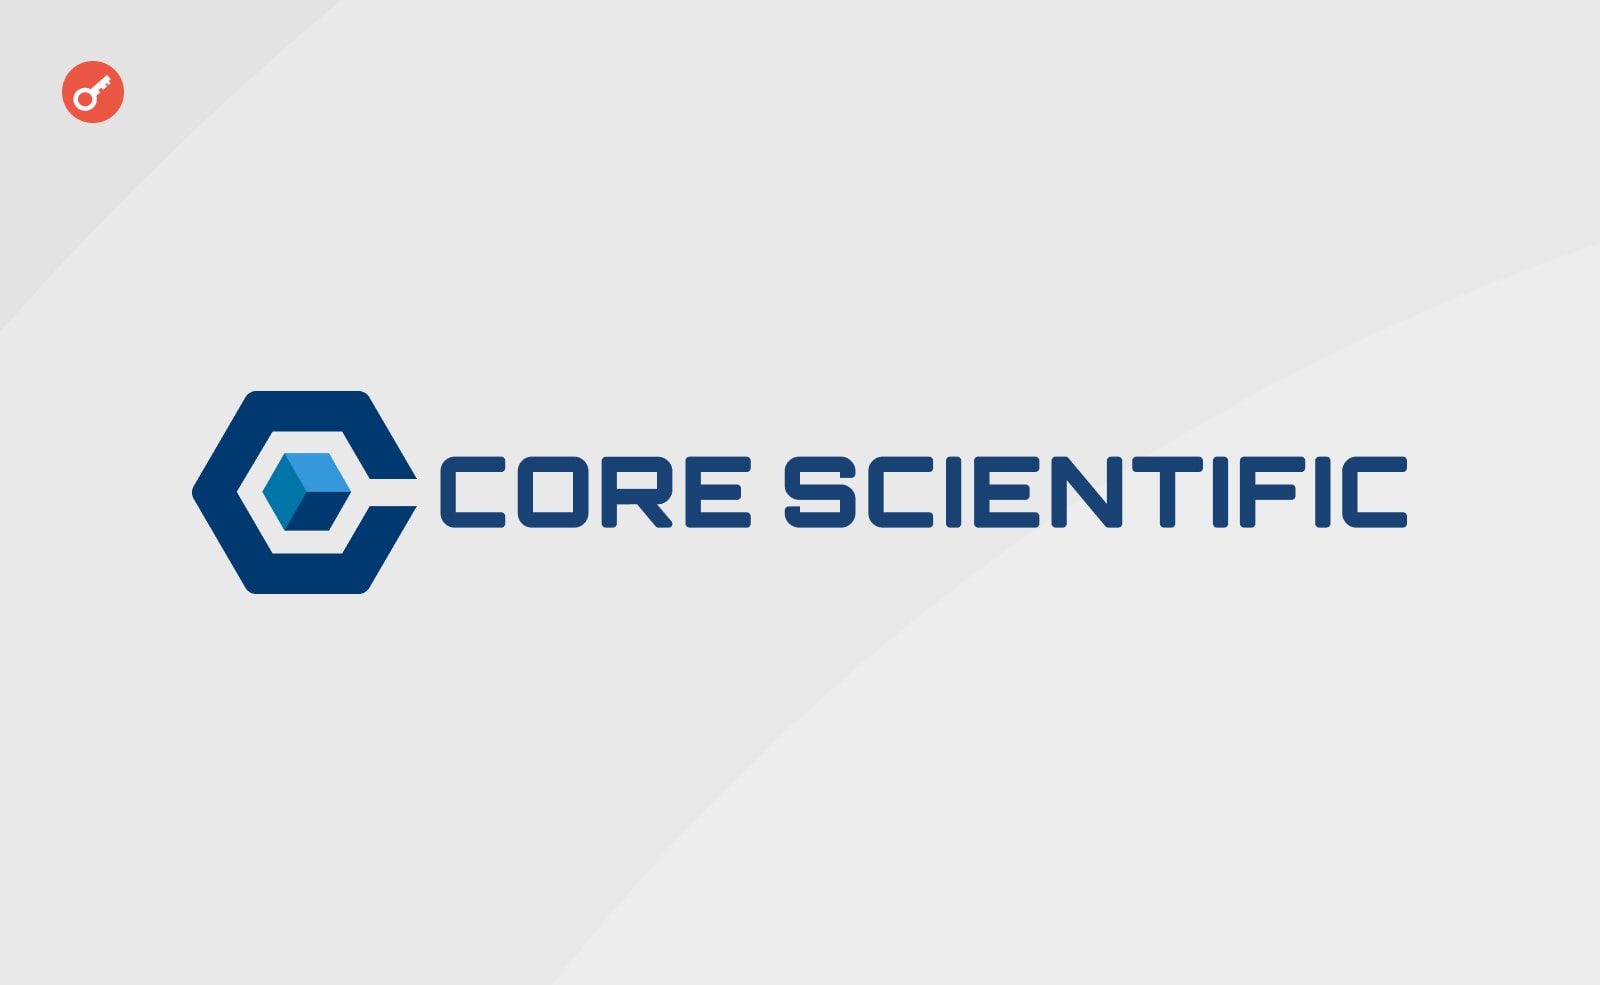 Core Scientific добились замены кредита на более выгодных условиях. Заглавный коллаж новости.